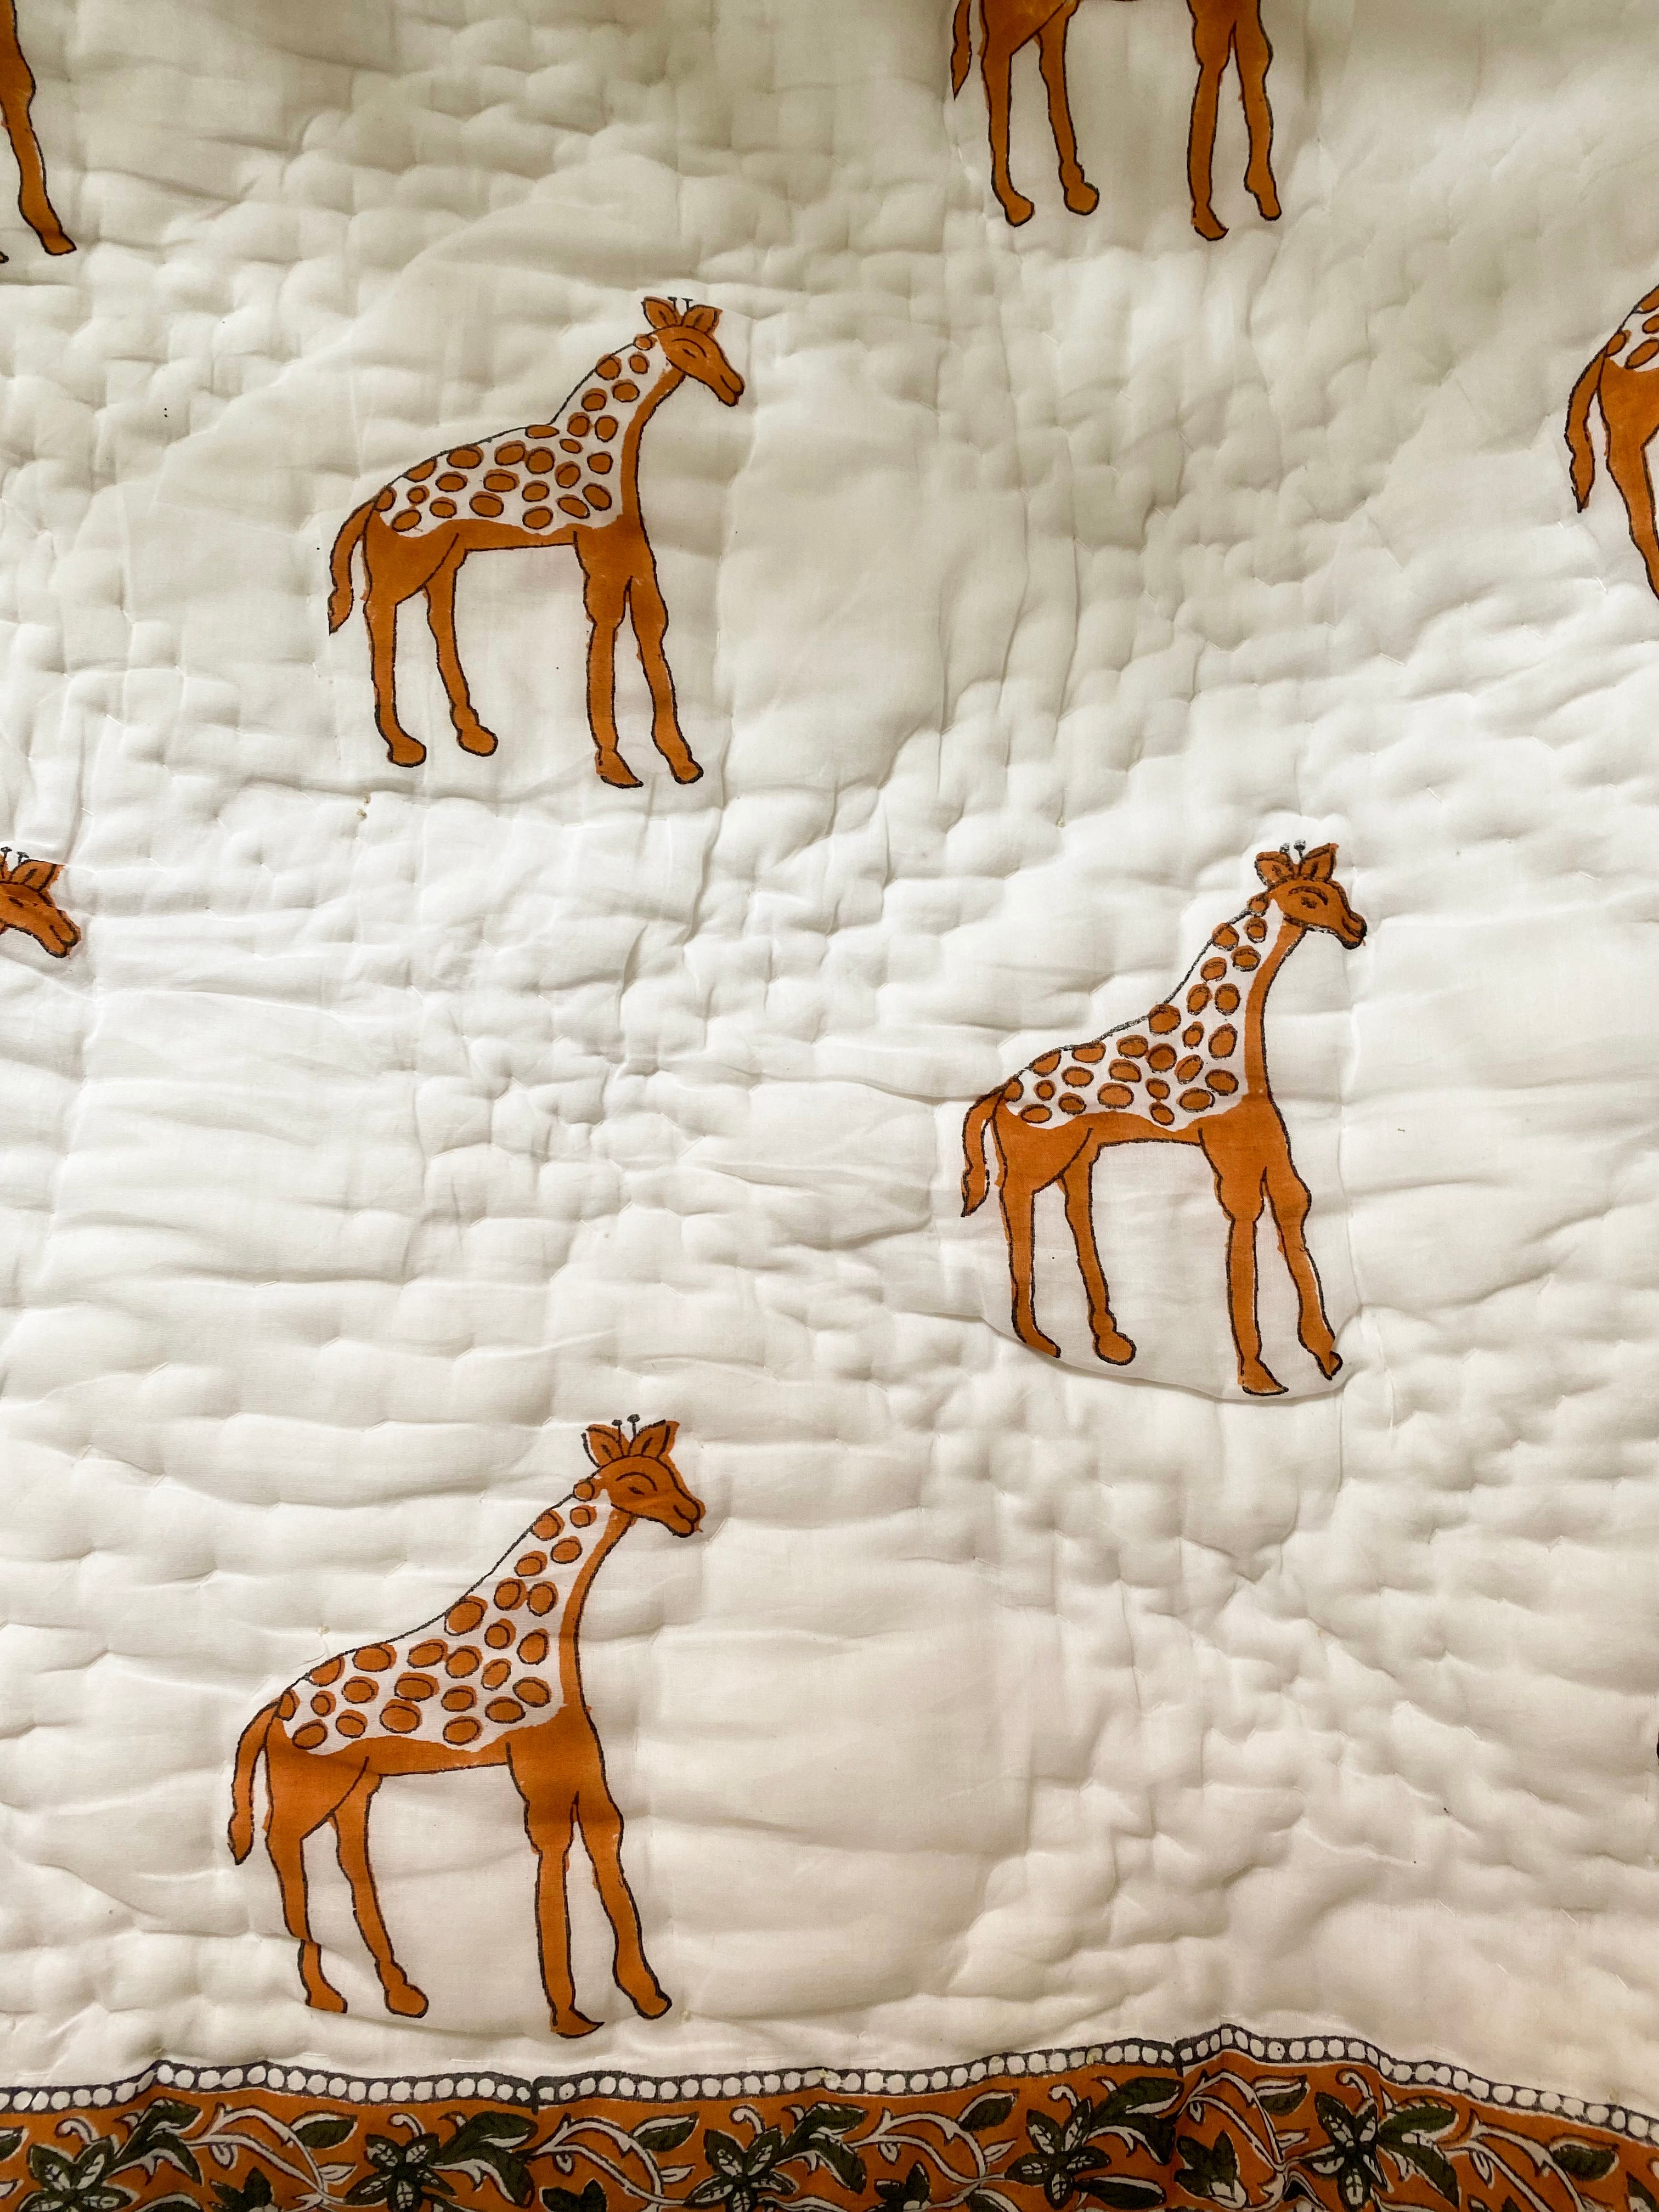 Giraffes quilt & pillow ~ Jorgan dhe këllëf